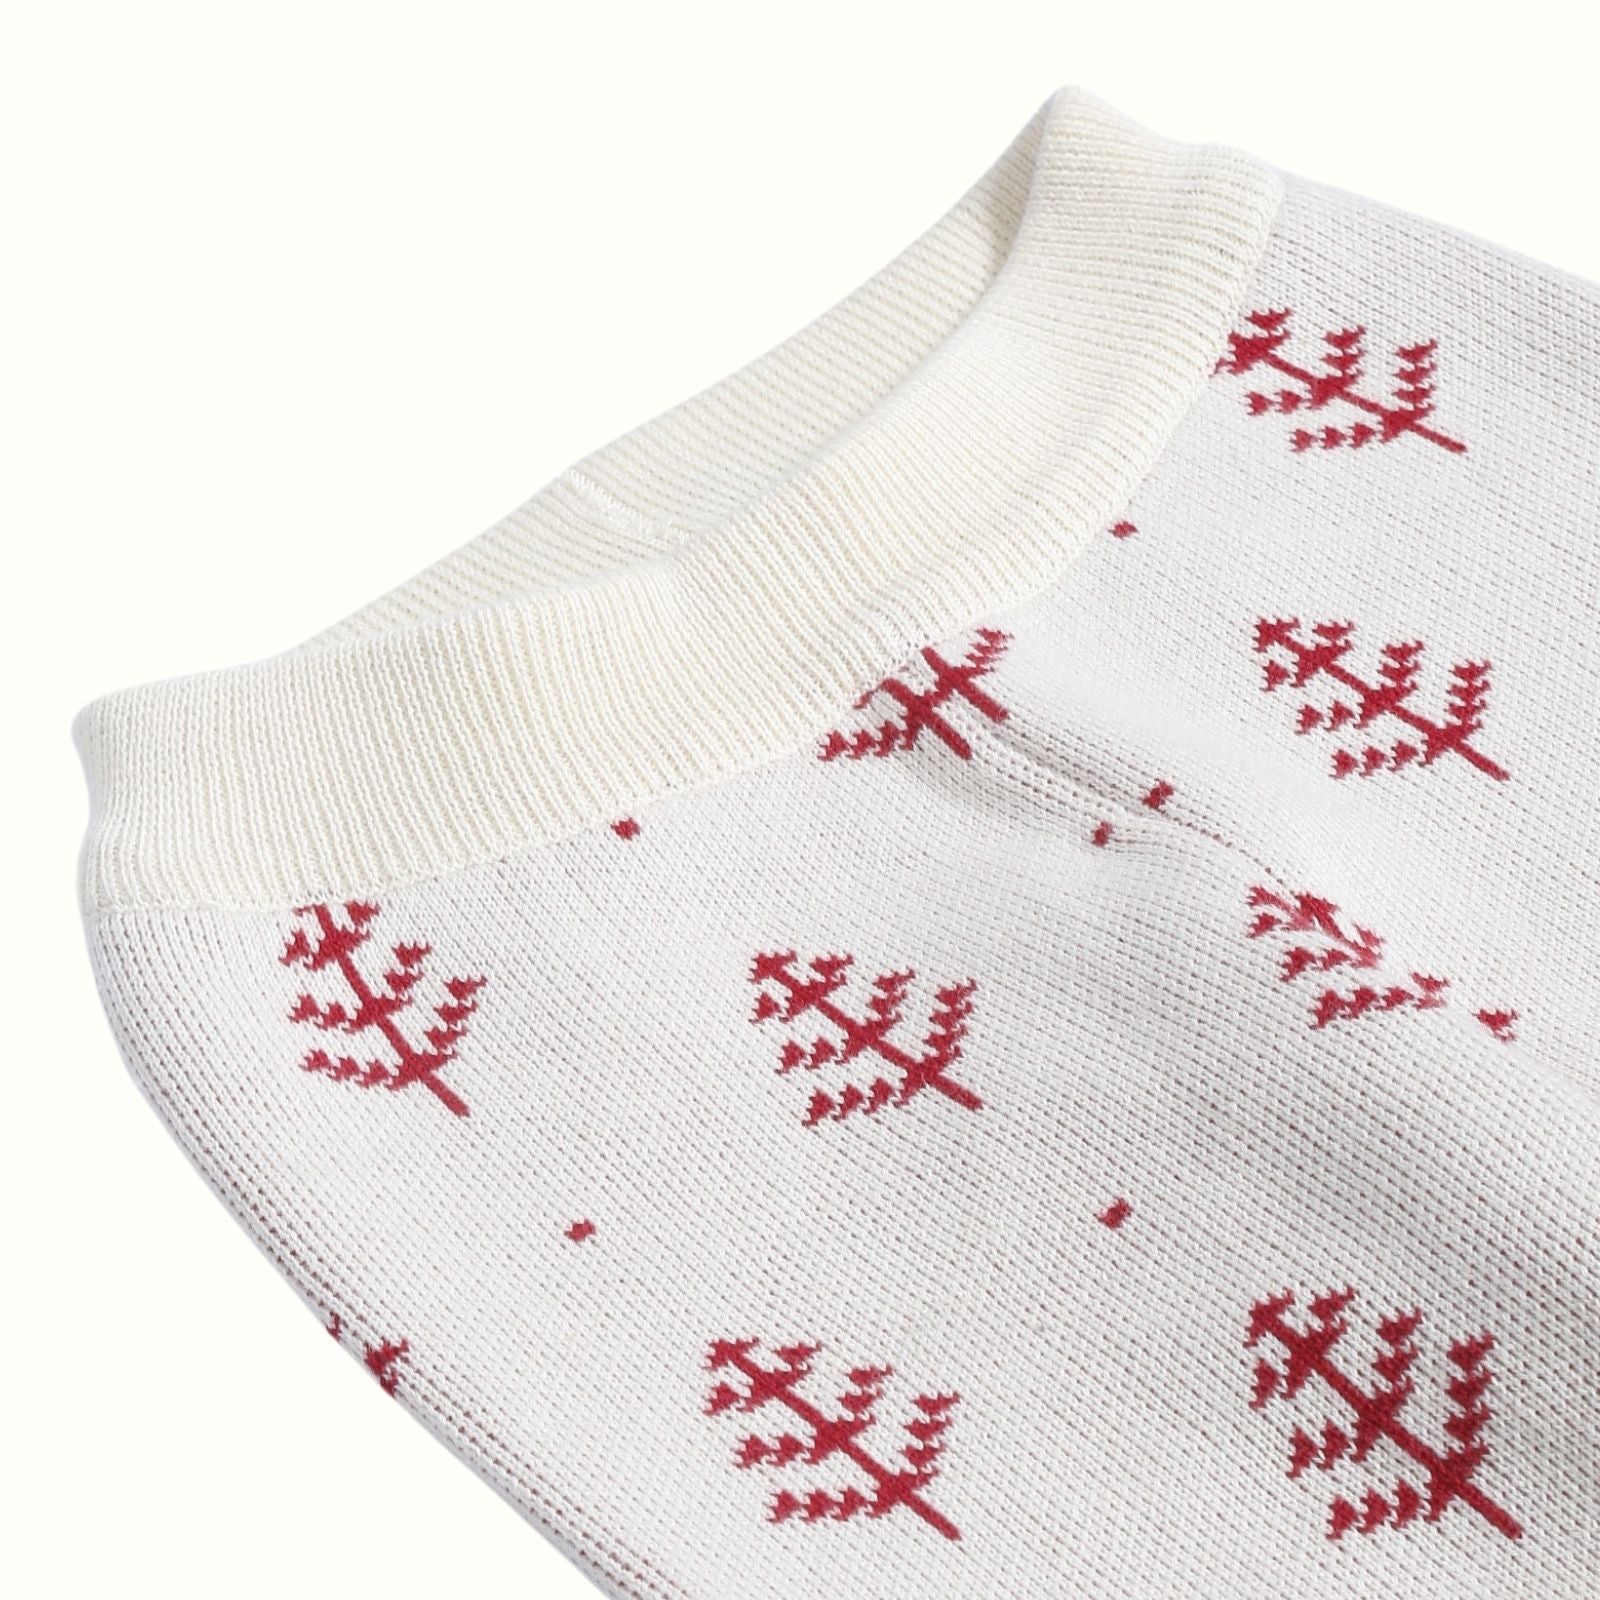 Greendeer Jaunty Reindeer & Joyful Reindeer 100% Cotton Sweater with Lower Set of 3